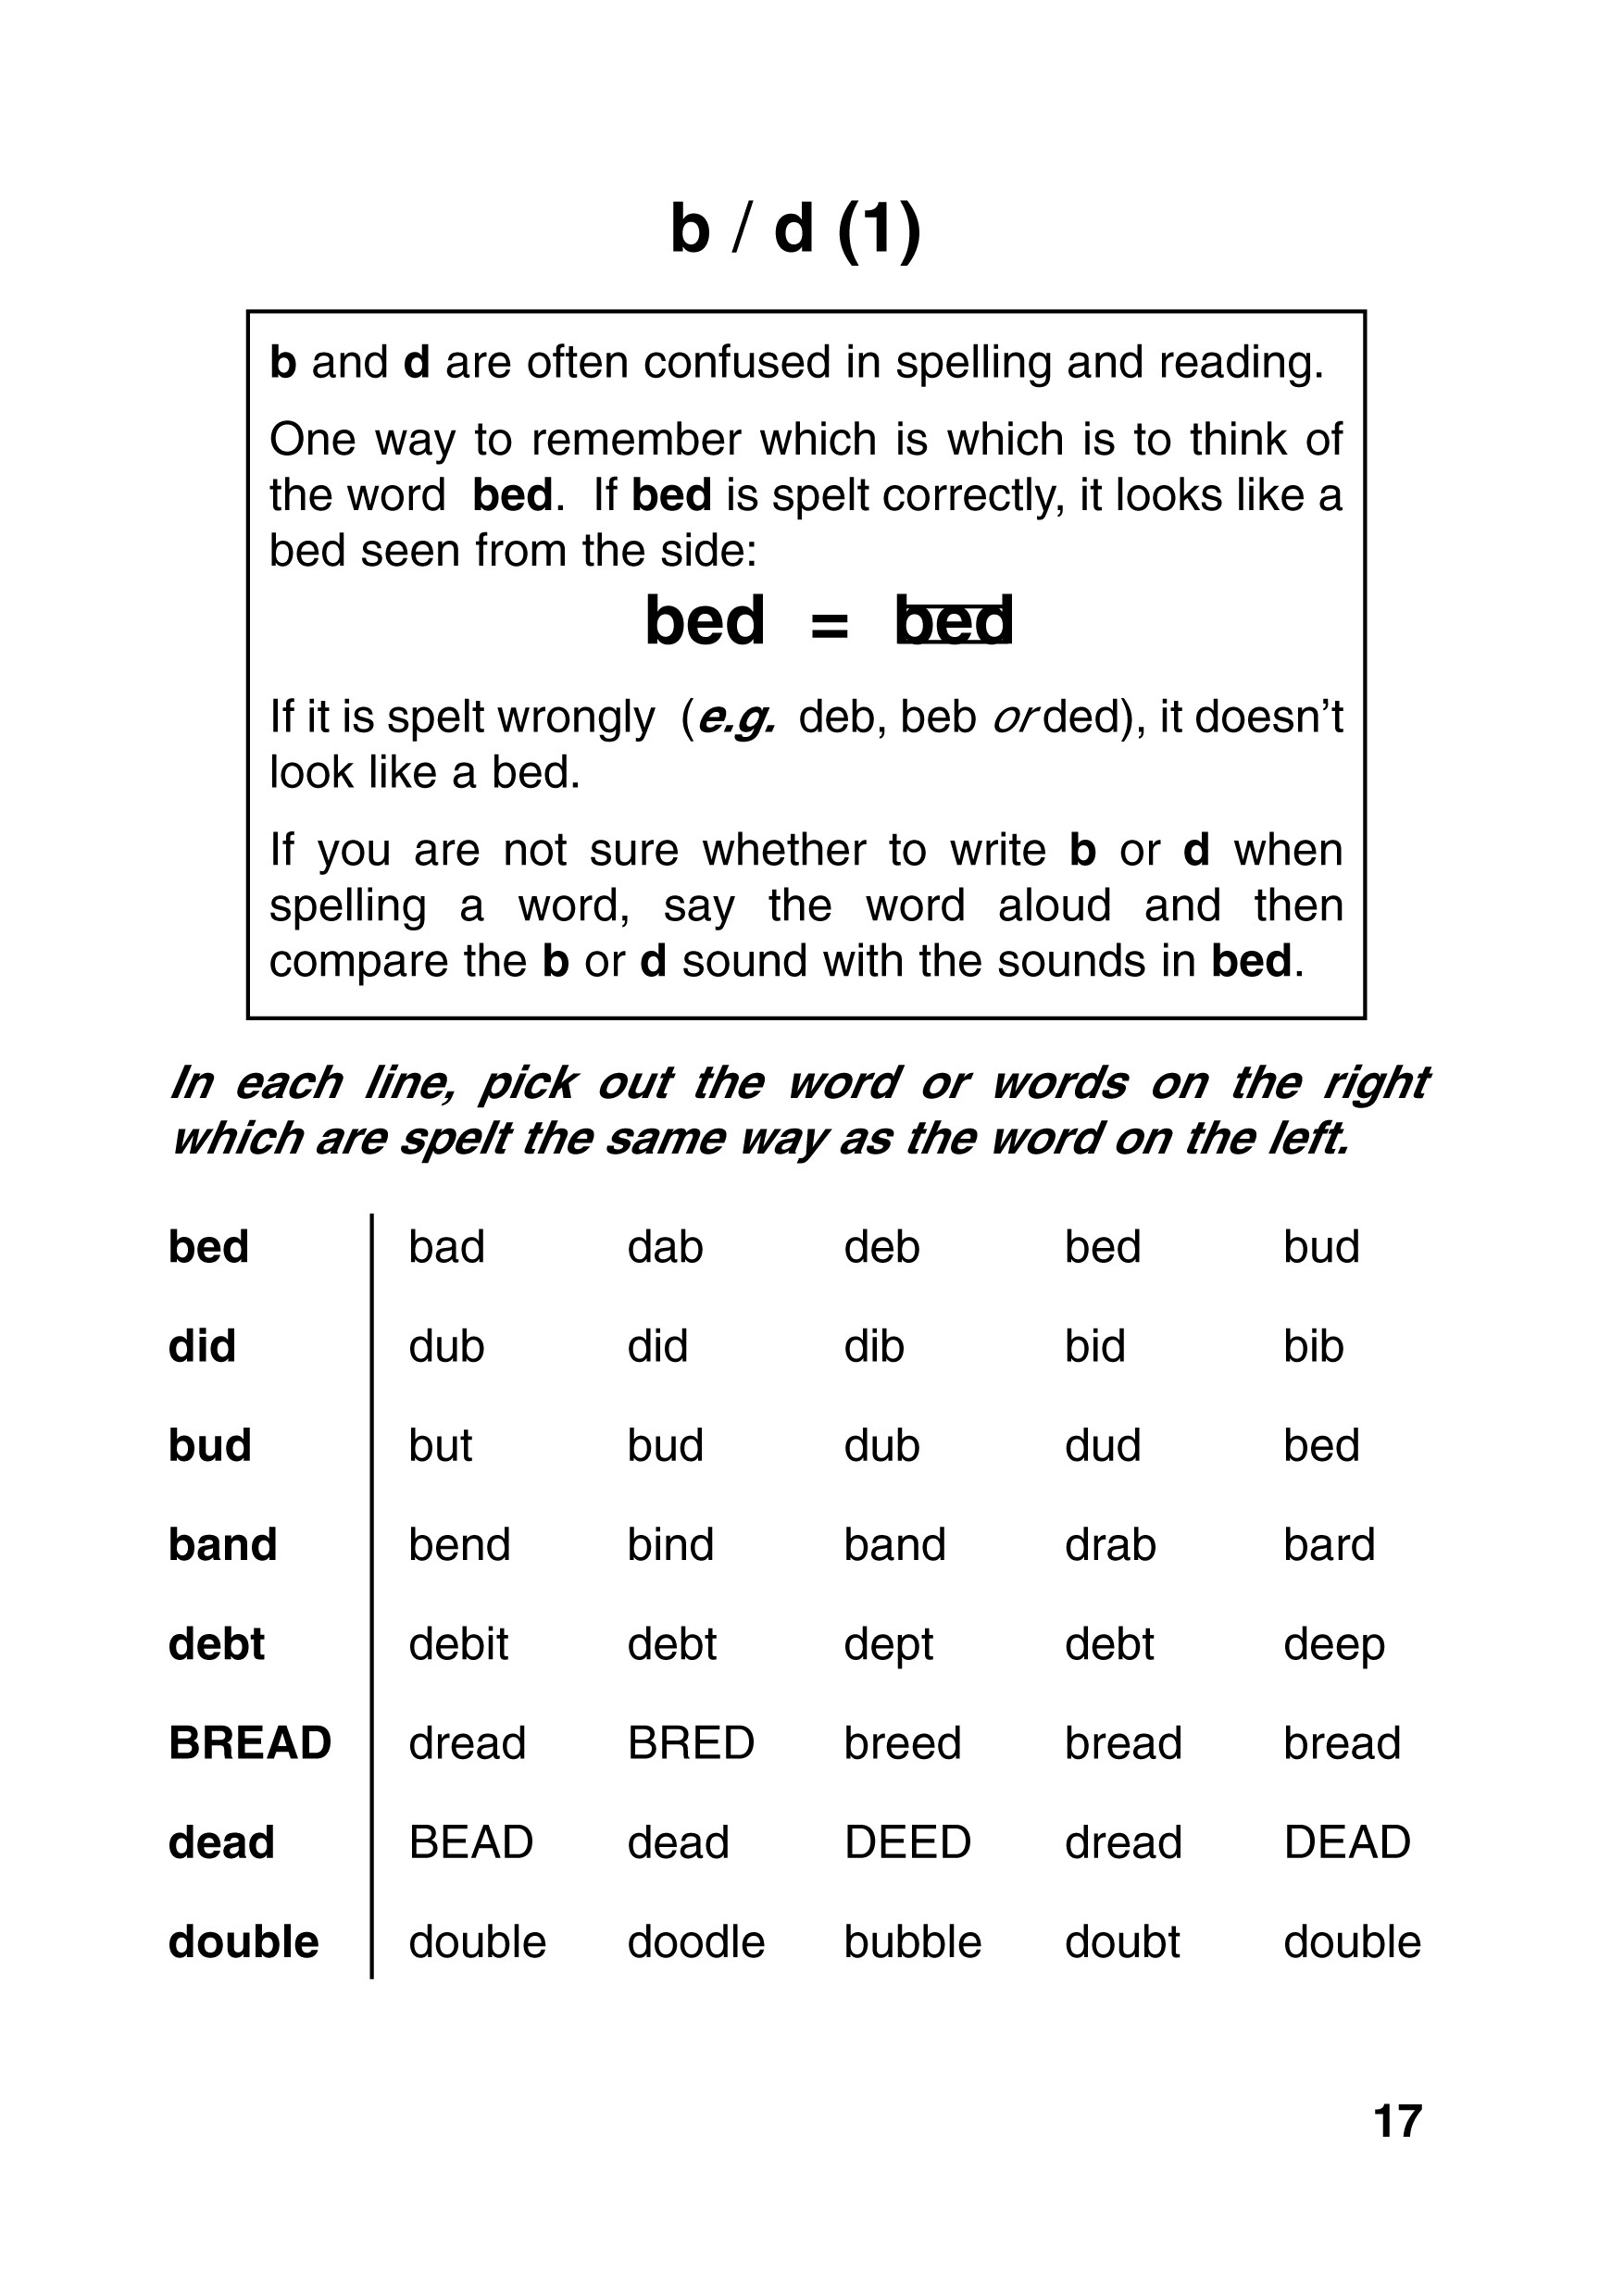 Adult Spelling Workbooks Image